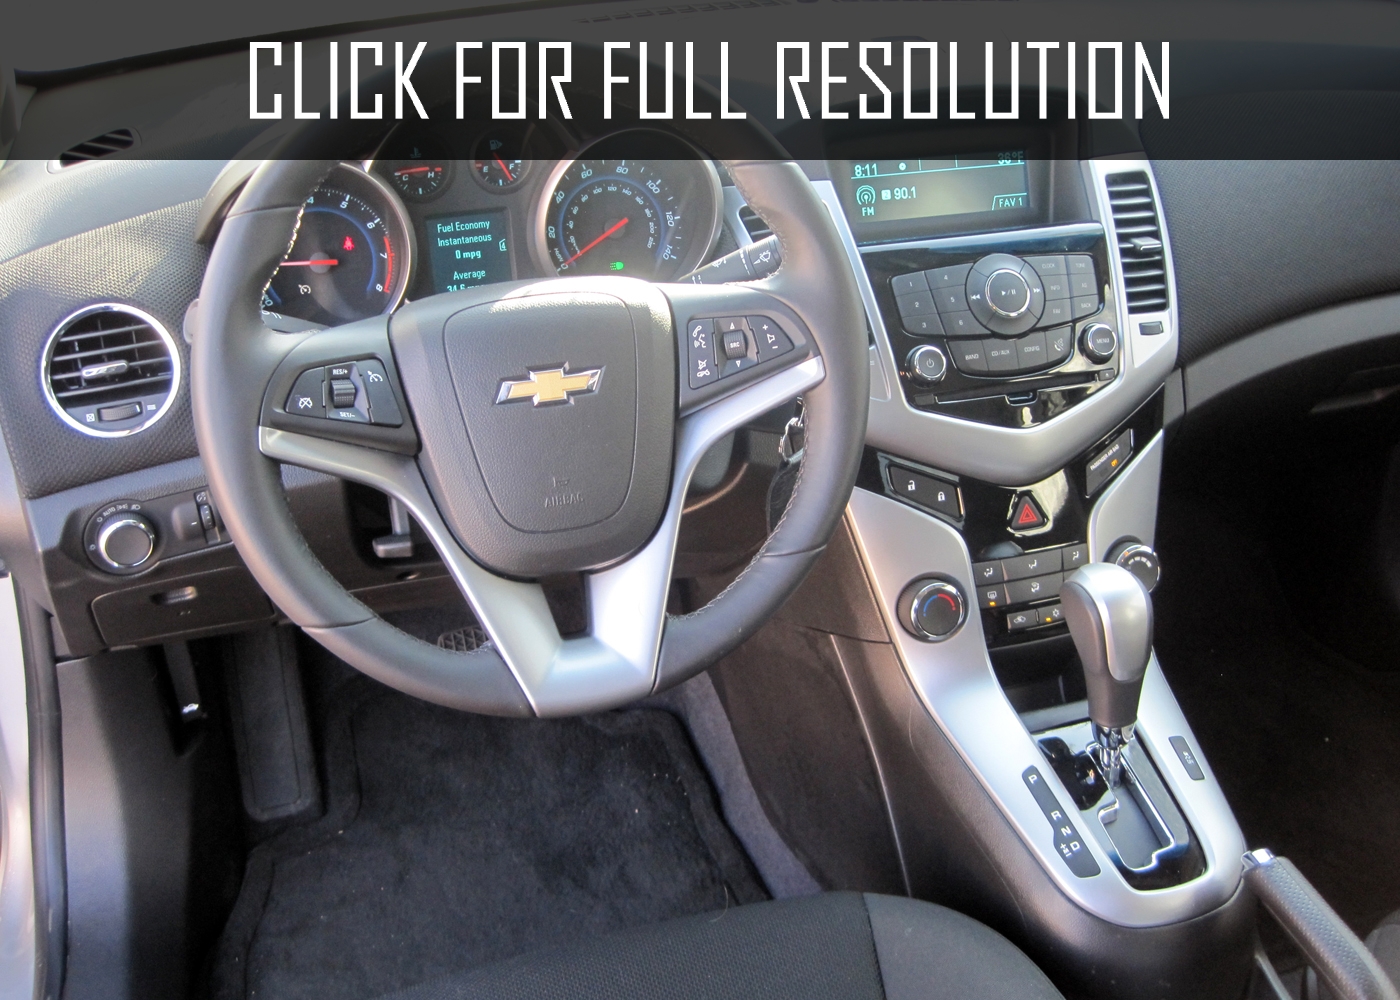 Chevrolet Cruze Eco 2014